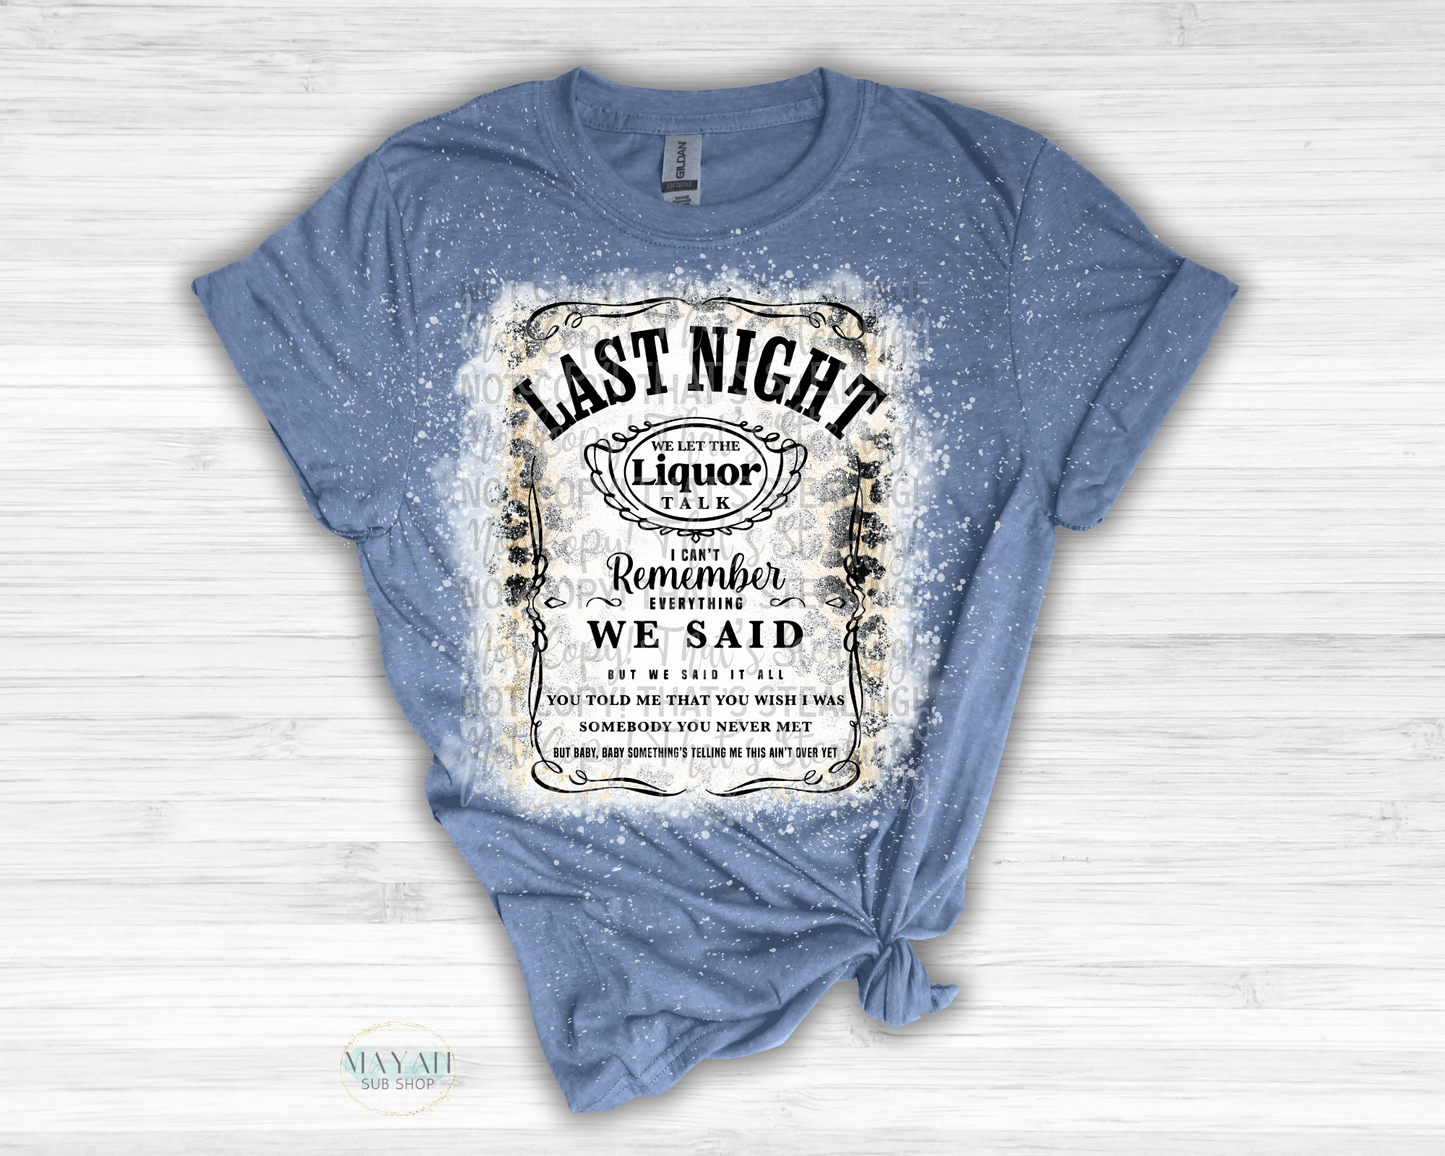 Last Night Talk Bleached Shirt - Mayan Sub Shop